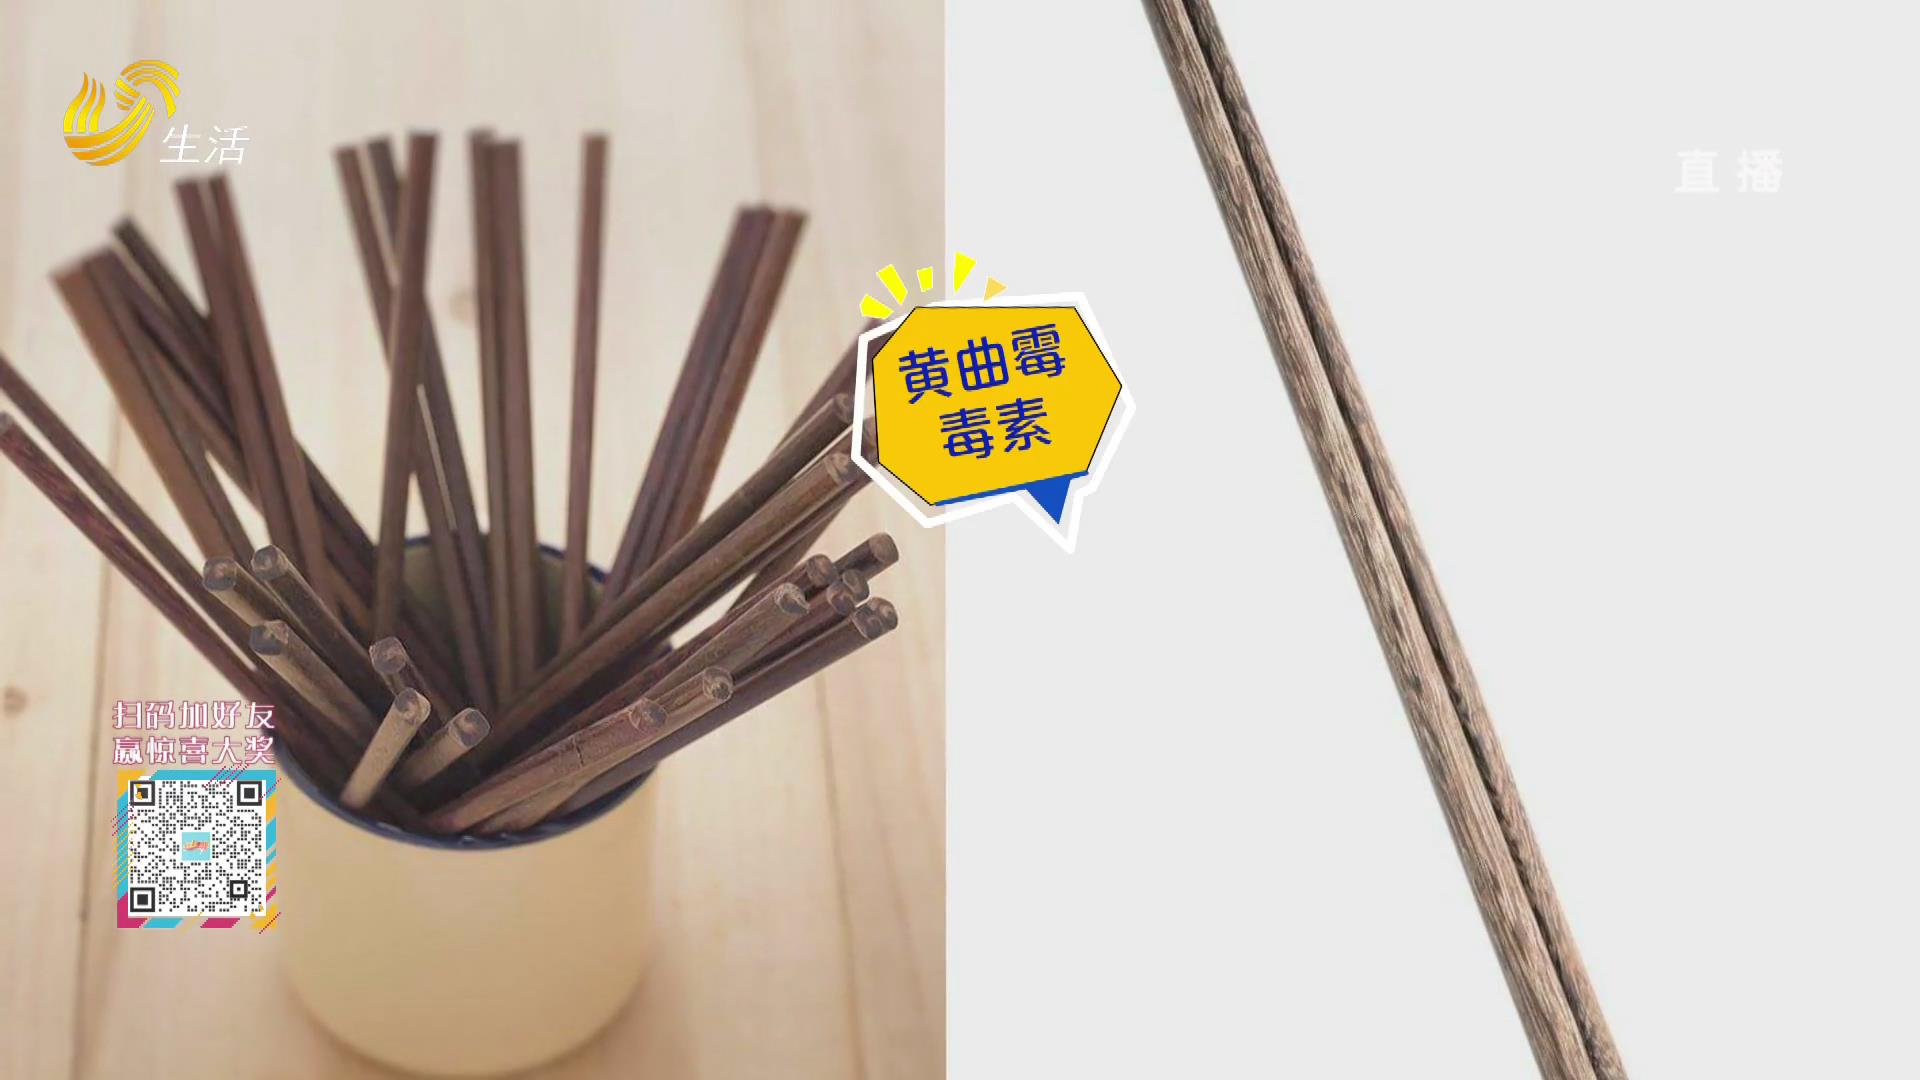 筷子用久了容易滋生黄曲霉毒